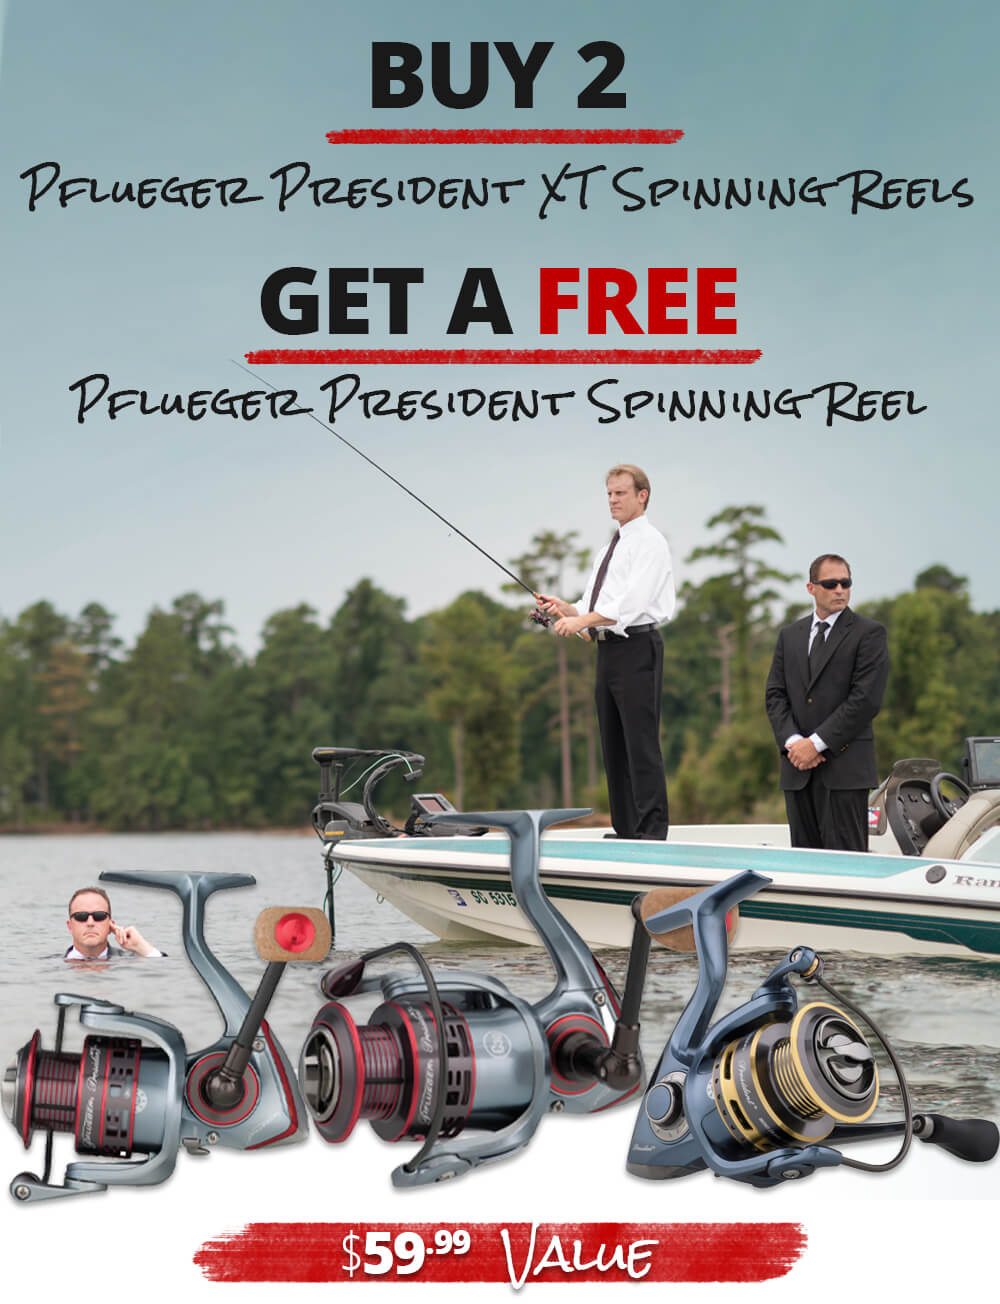 BUY 2 Pflueger President XT Spinning Reels, GET a FREE Pflueger President Spinning Reel!